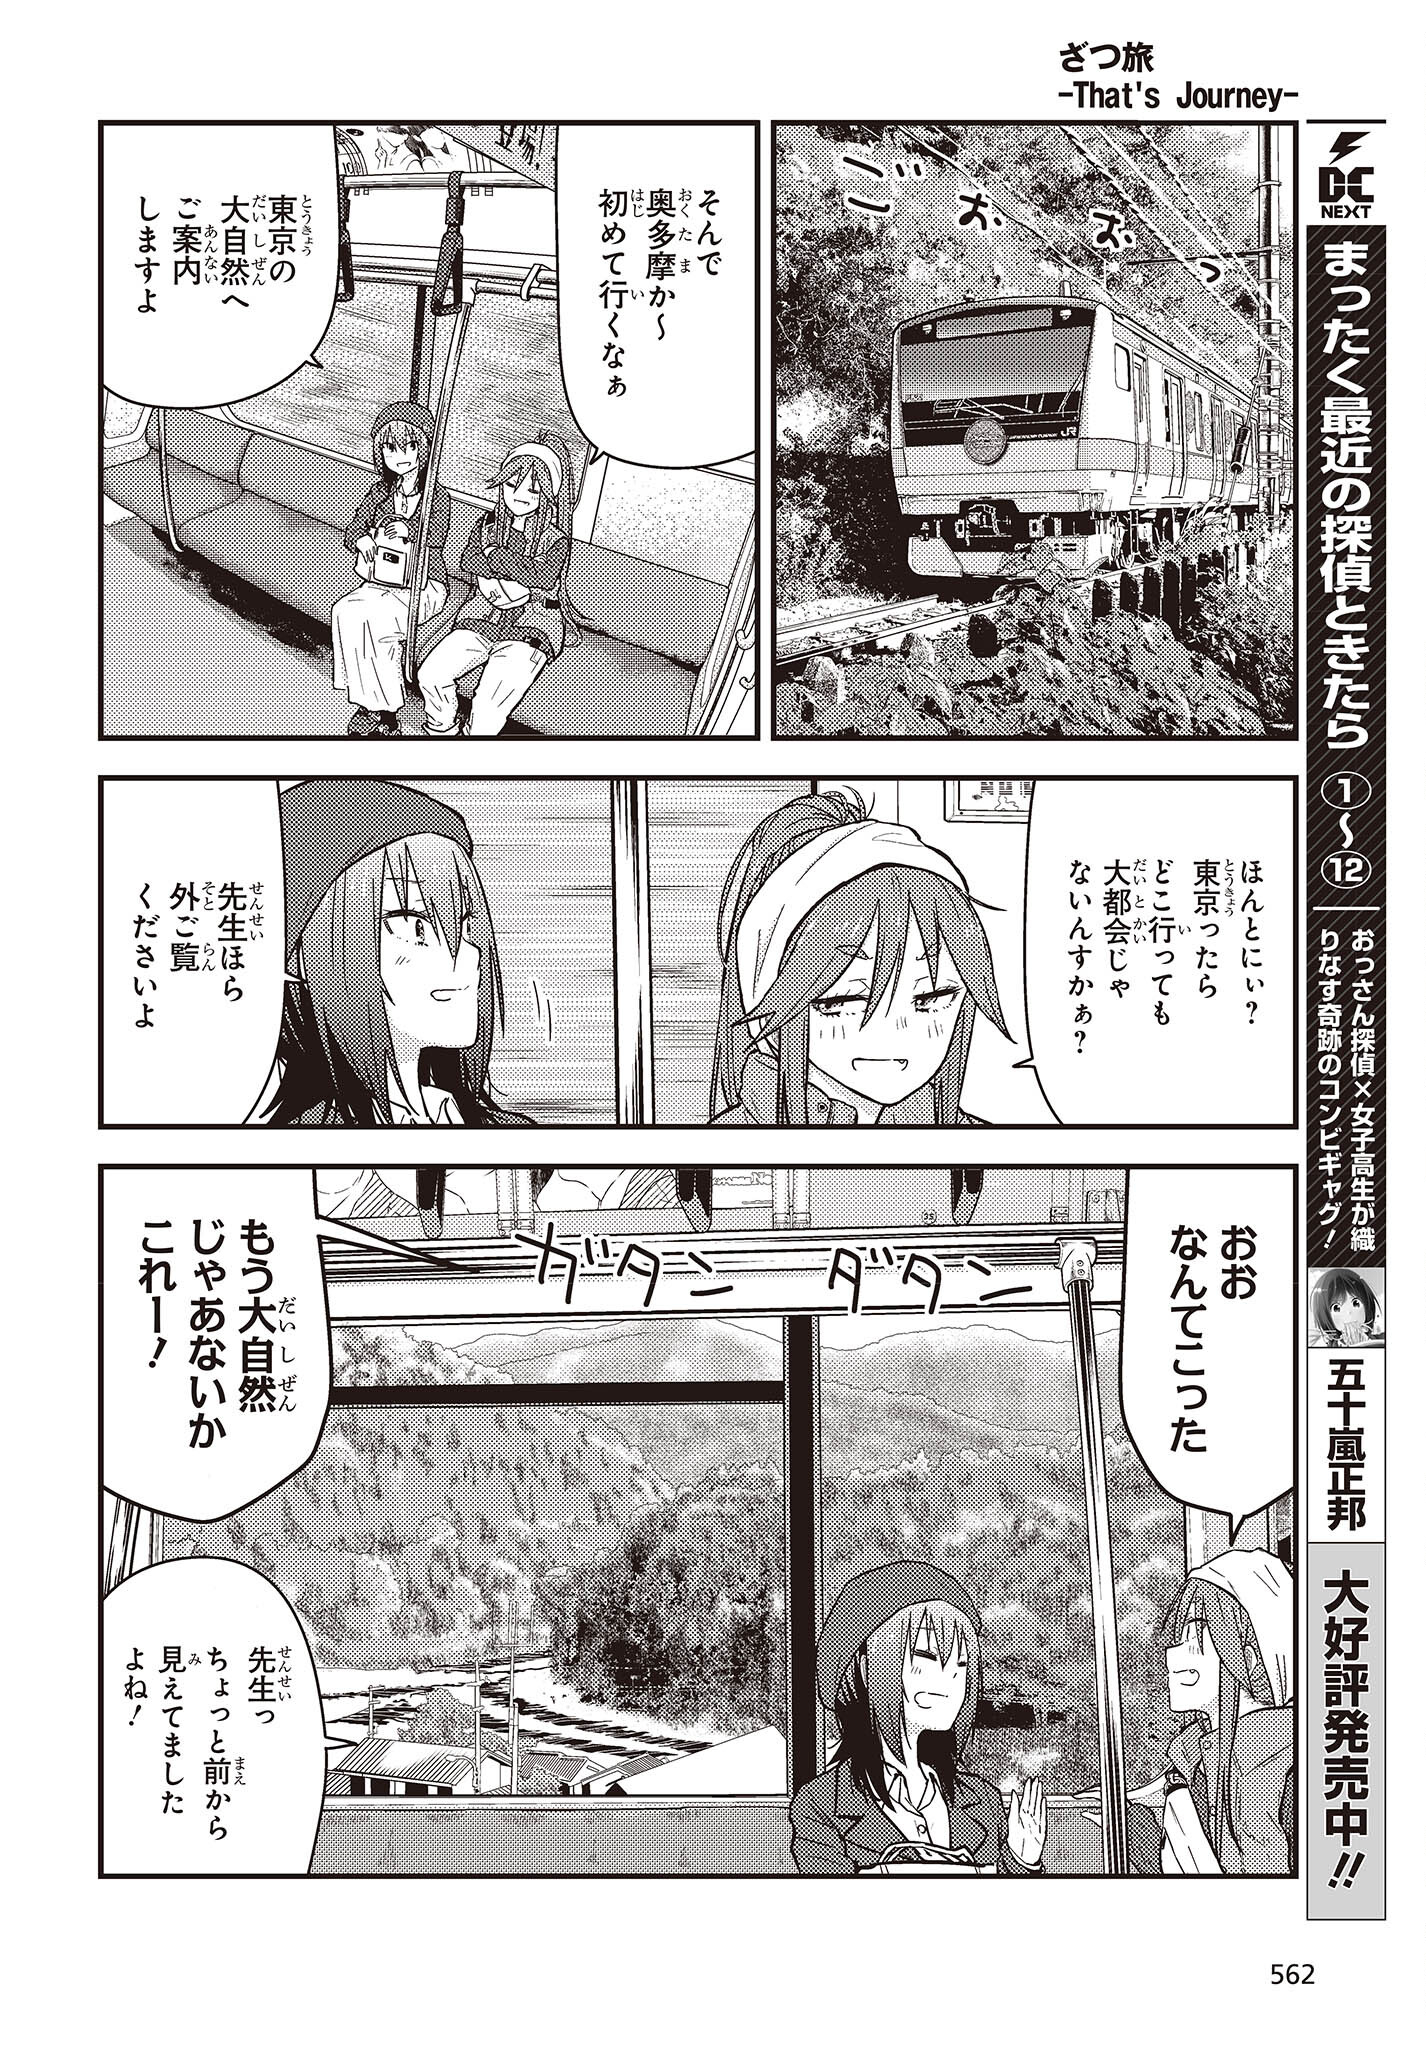 ざつ旅–That?s Journey– 第26.2話 - Page 4